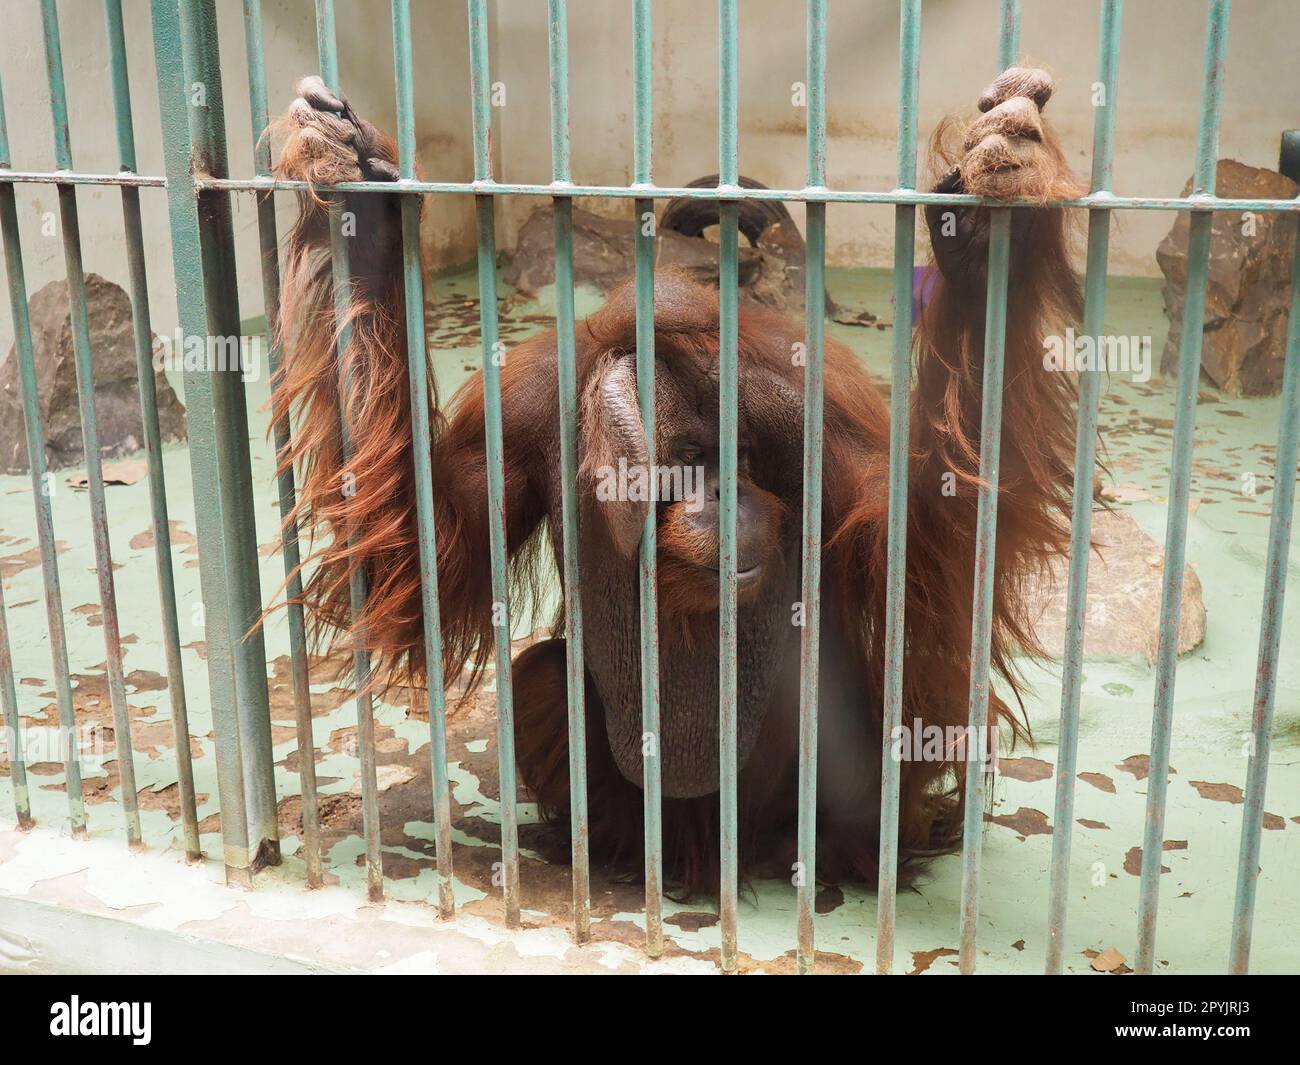 Trauriger Orang-Utan hinter Gittern. Orang-Utans, Orang-Utan - Waldmann, Pongo - Gattung der Arborealaffen, einer der Menschen in der DNA-Homologie am nächsten Stockfoto